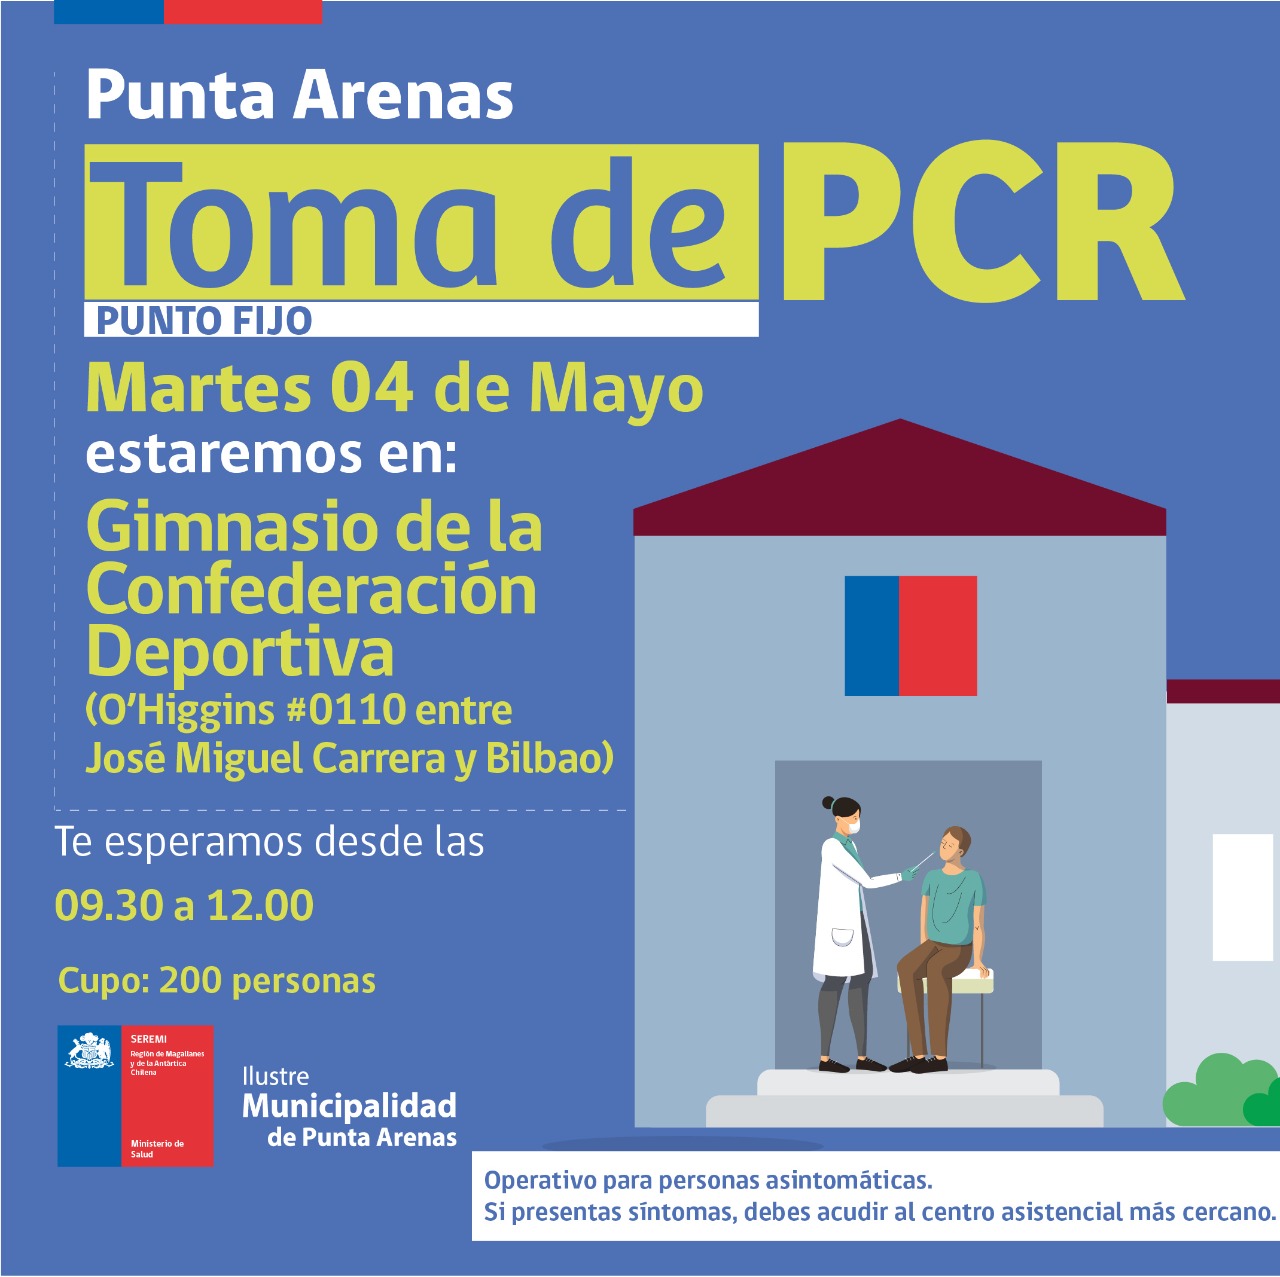 Operativos de toma de PCR se realizarán en Punta Arenas, Natales, Porvenir y Timaukel